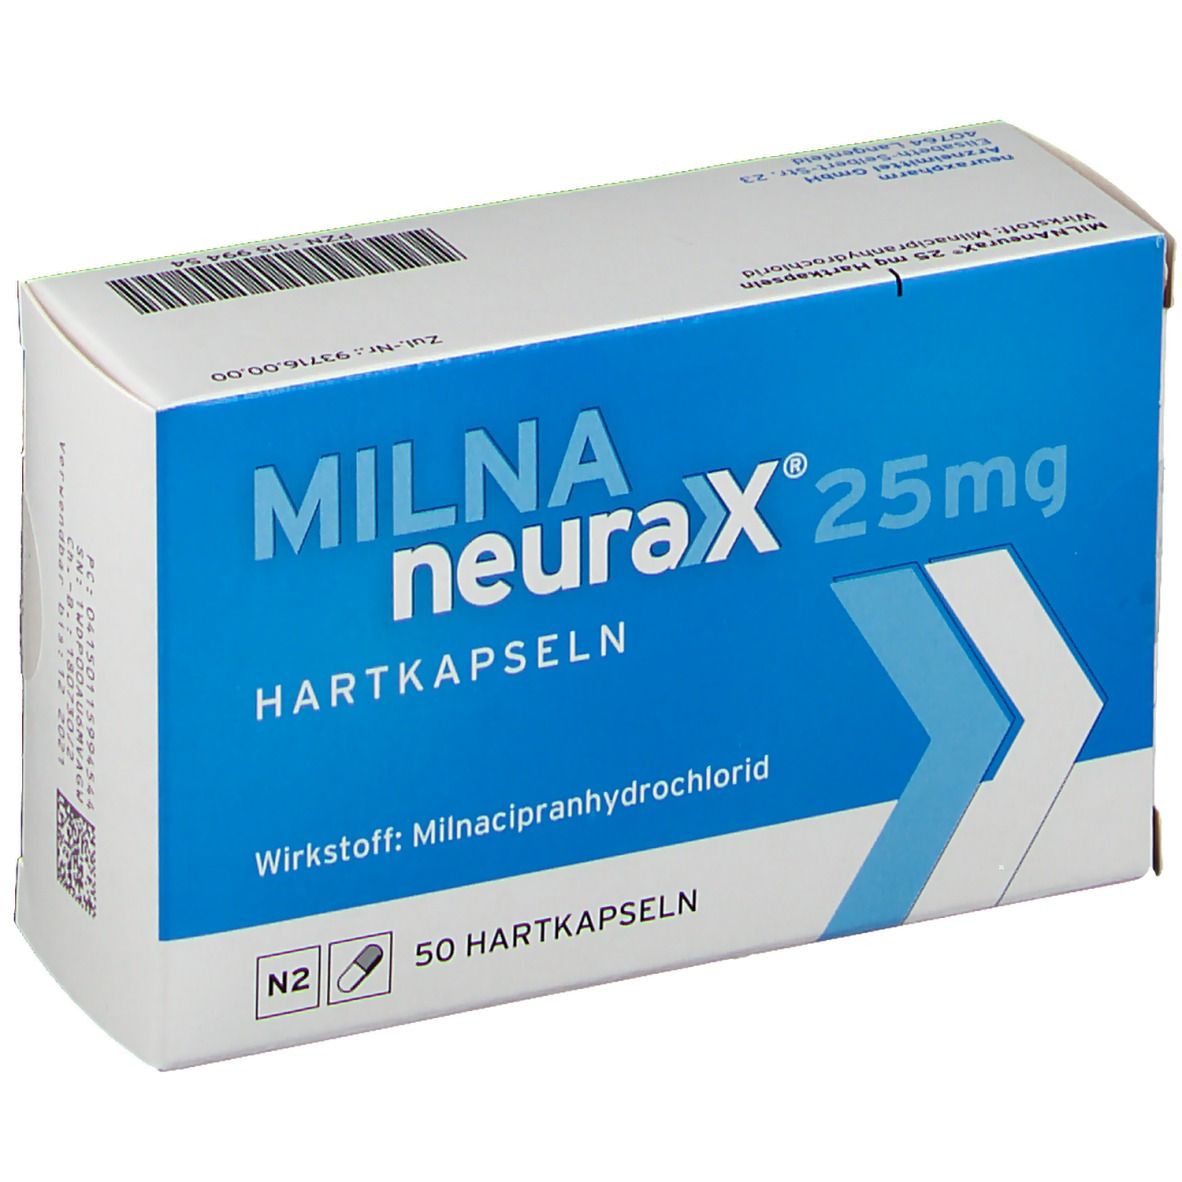 MILNAneurax® 25 mg